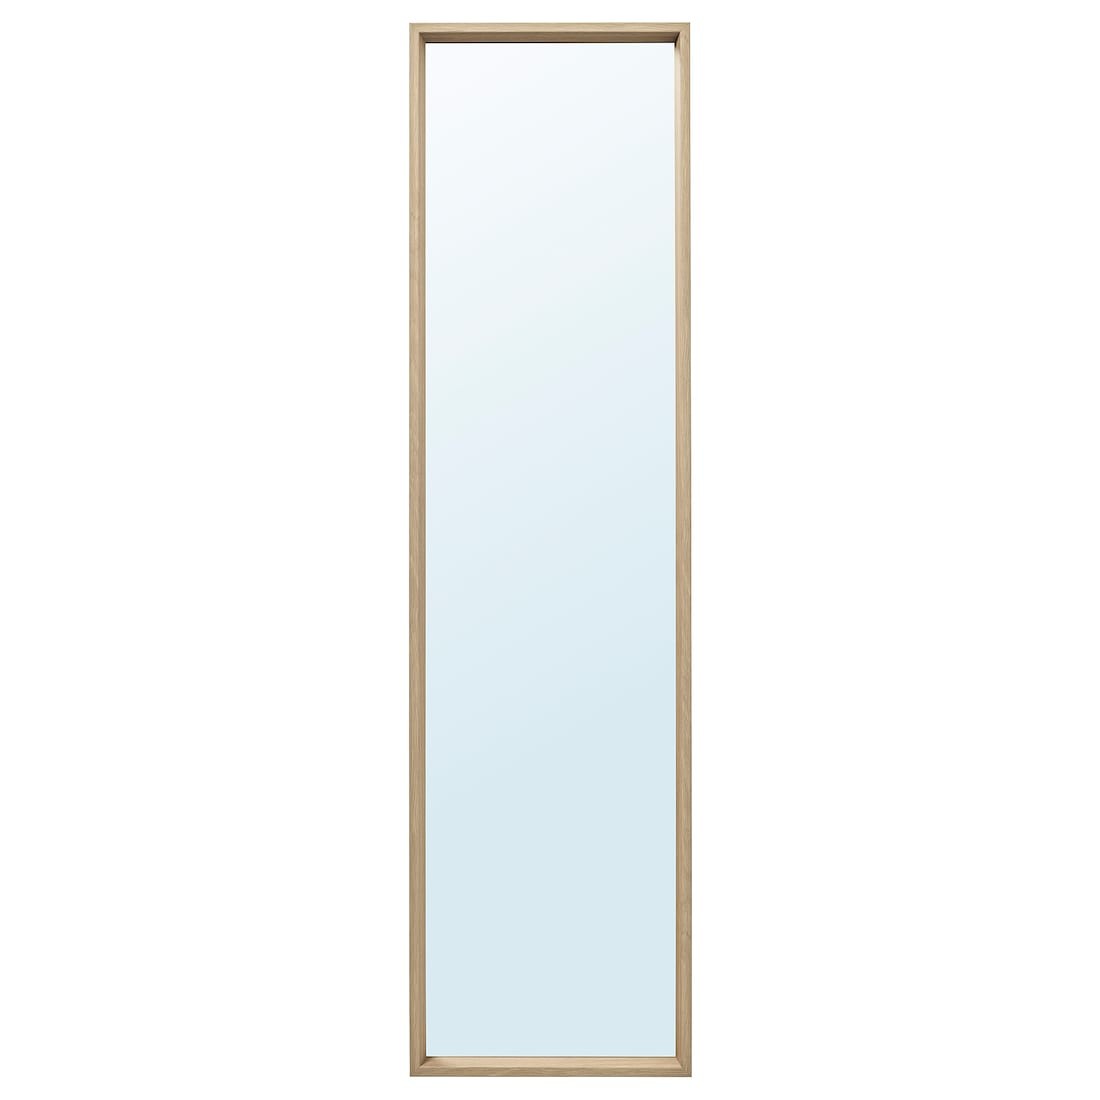 IKEA NISSEDAL НИССЕДАЛЬ Зеркало, под беленый дуб, 40x150 см 80390868 803.908.68